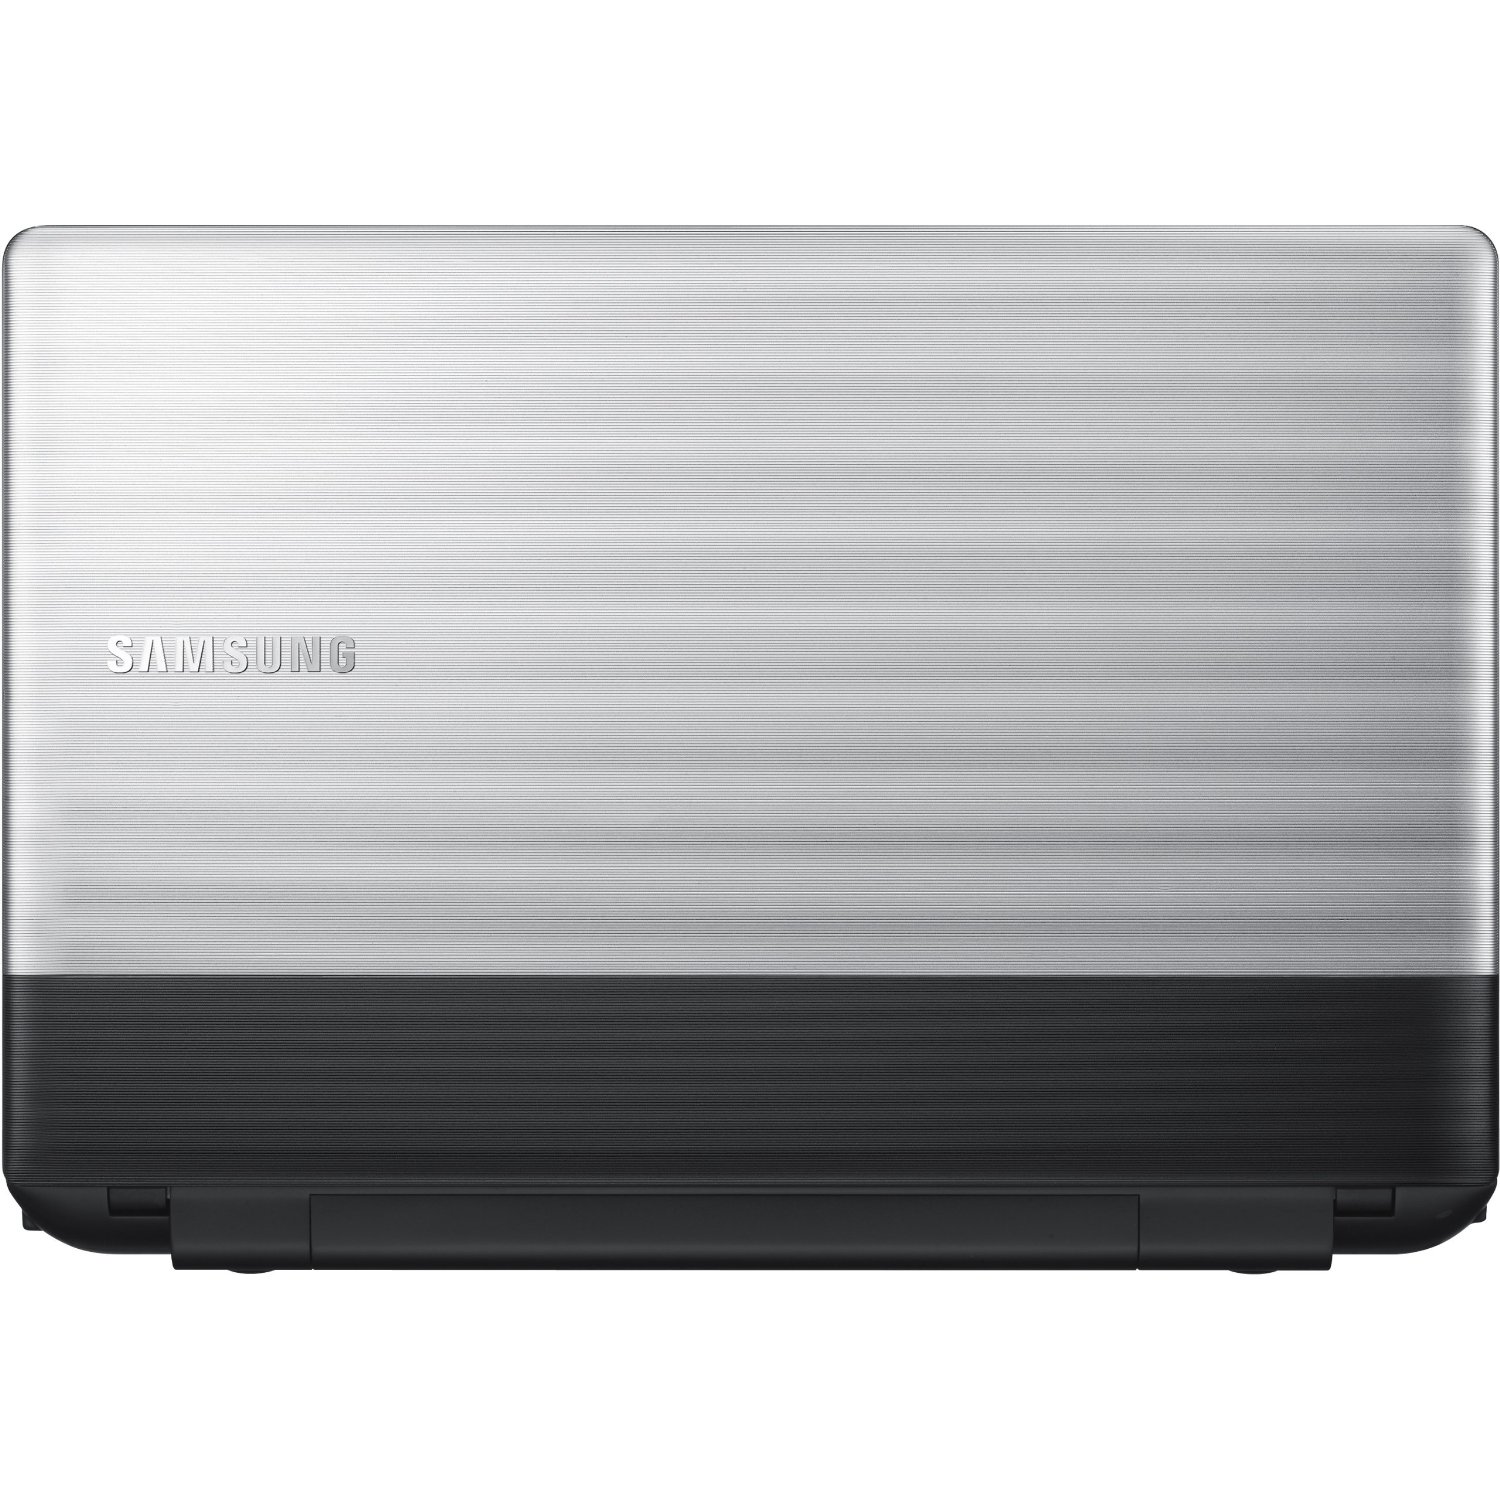 Samsung 300E5C-A05DE